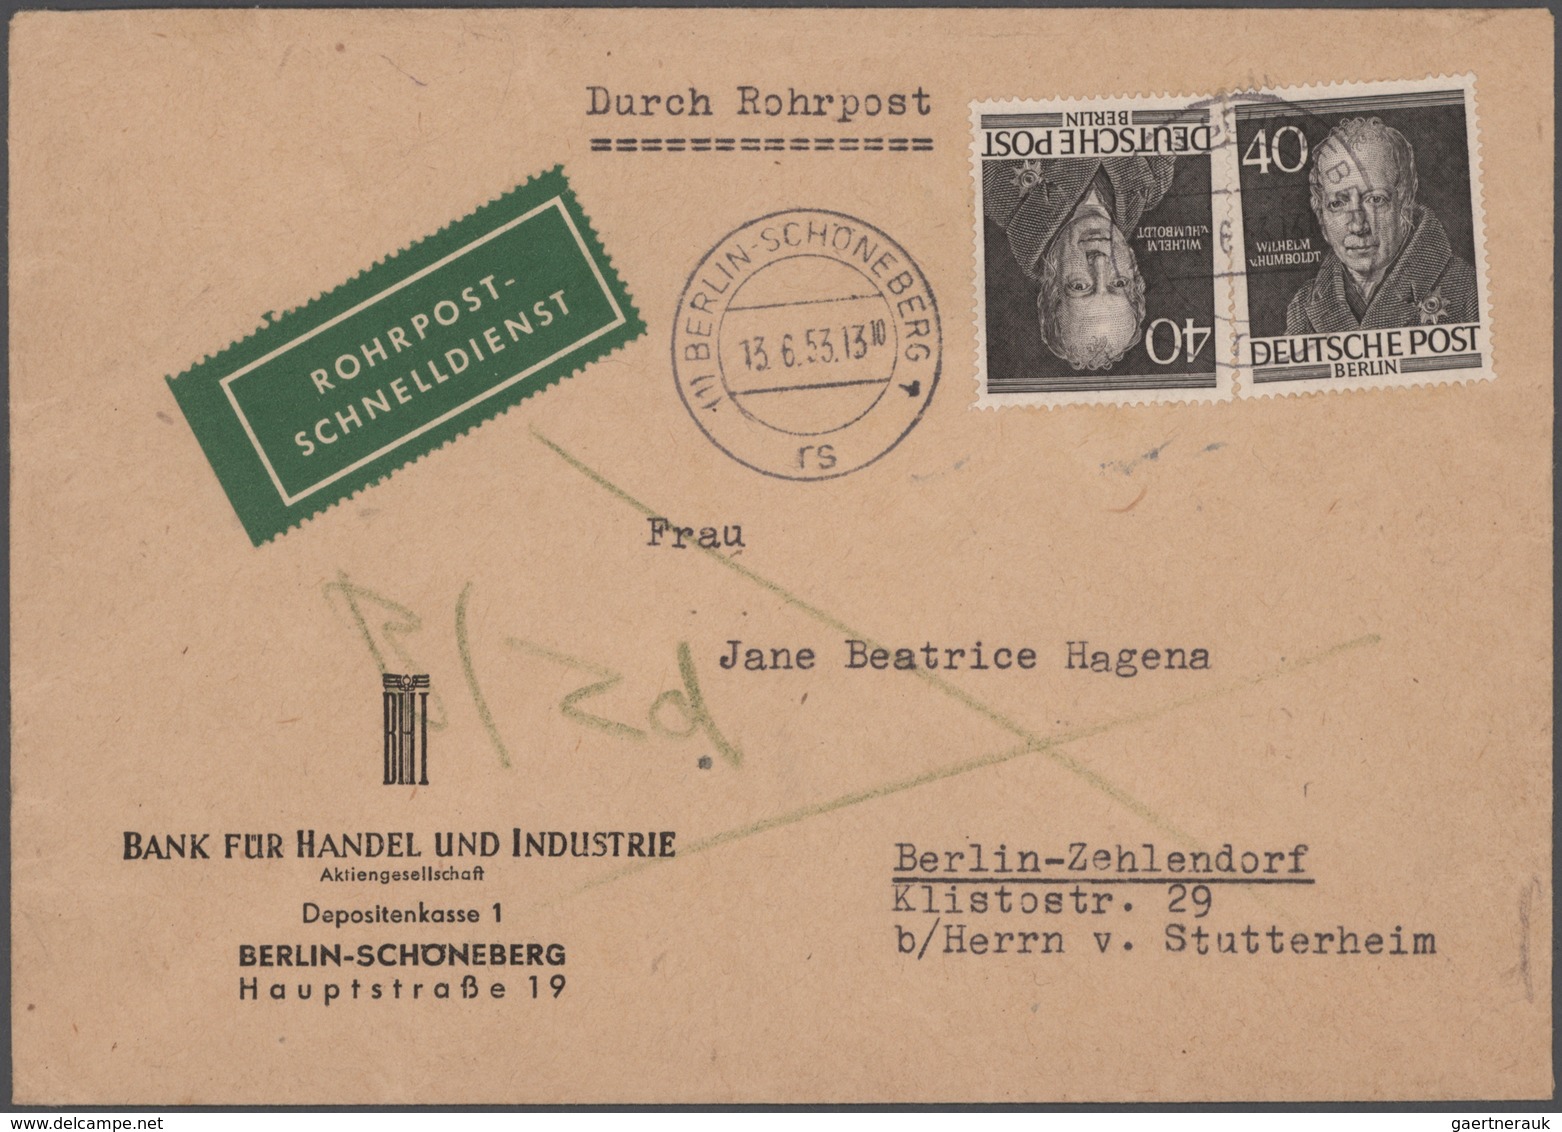 Berlin: 1948/1966, schöner Posten von 23 Einzel-, Mehrfach- und Mischfrankaturen, beginnend mit zwei